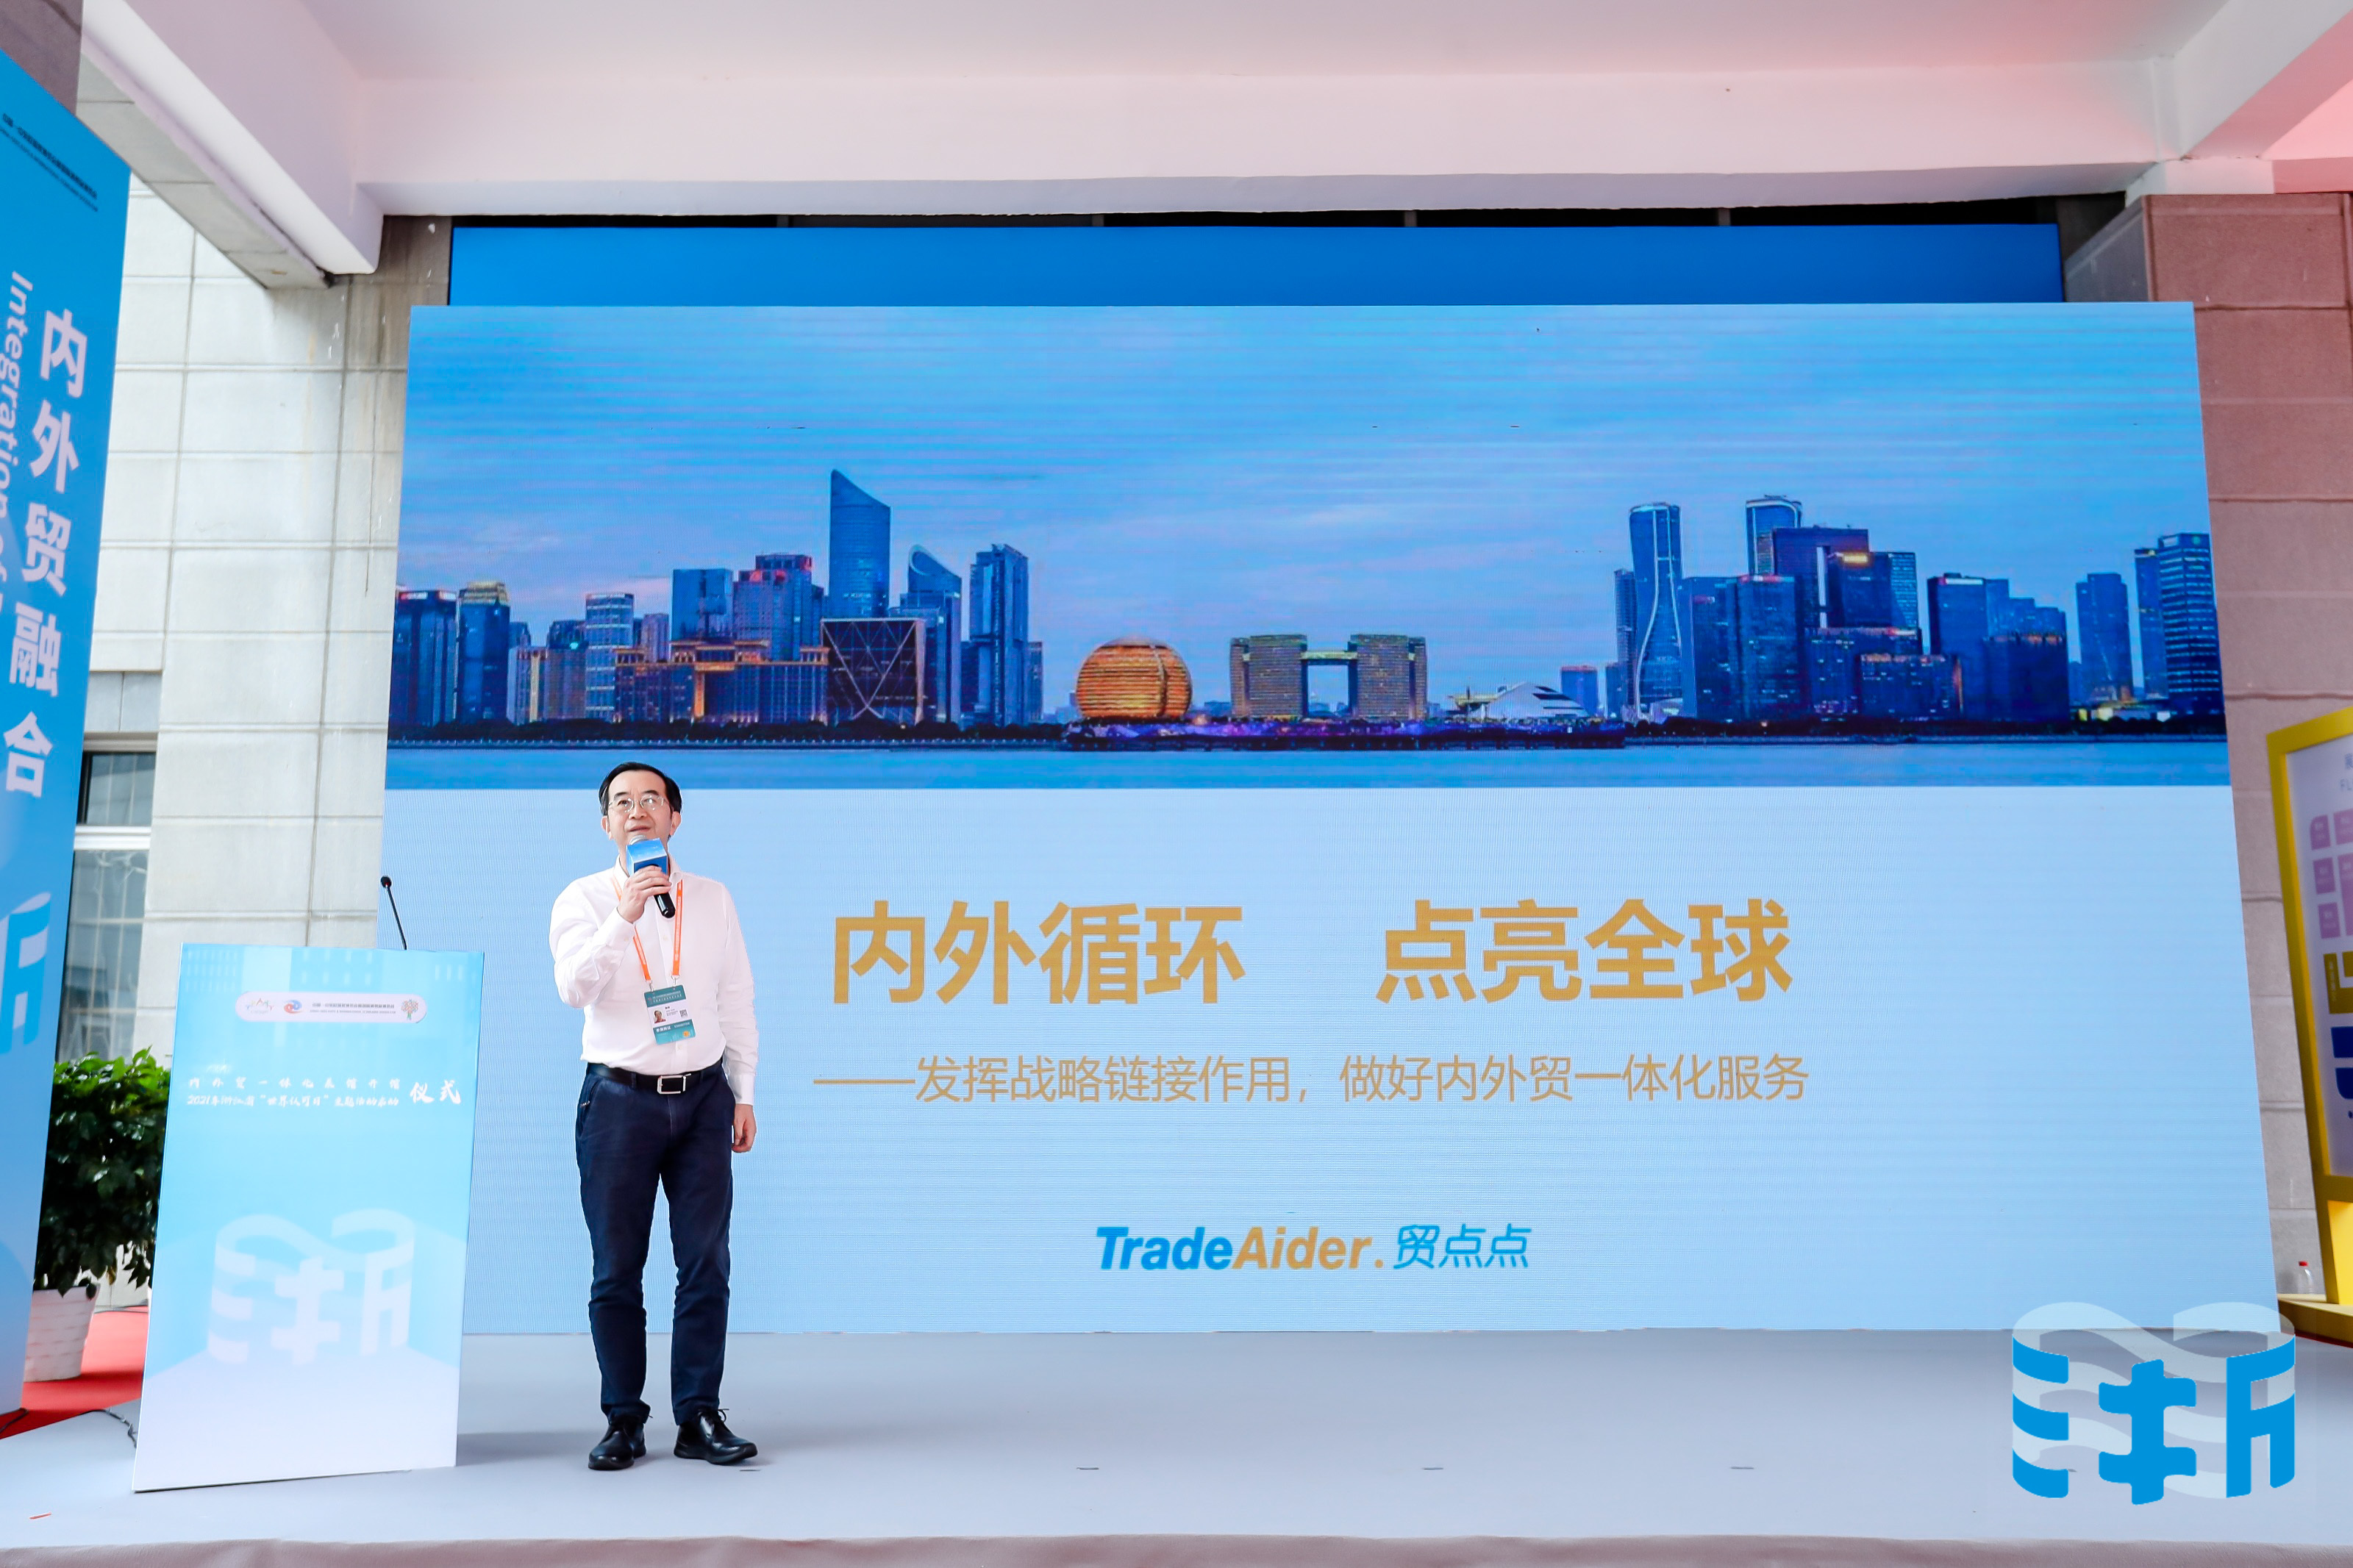 贸点点创始人陈良在内外贸一体化展馆开馆仪式上发表主题演讲